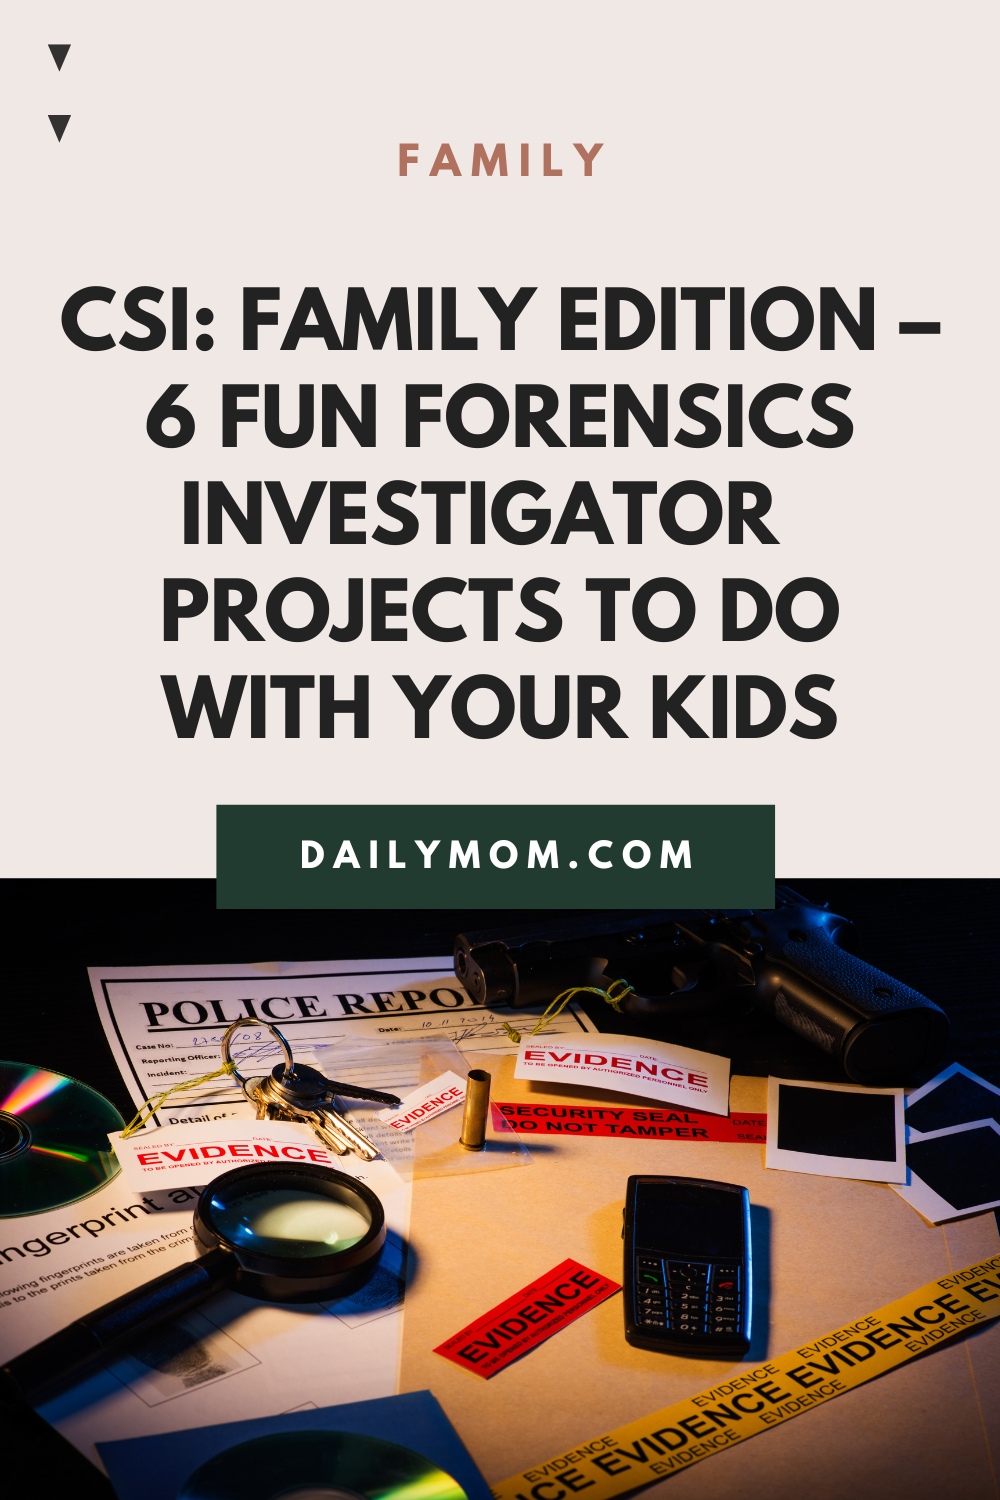 Daily Mom Parent Portal Forensics Investigator 